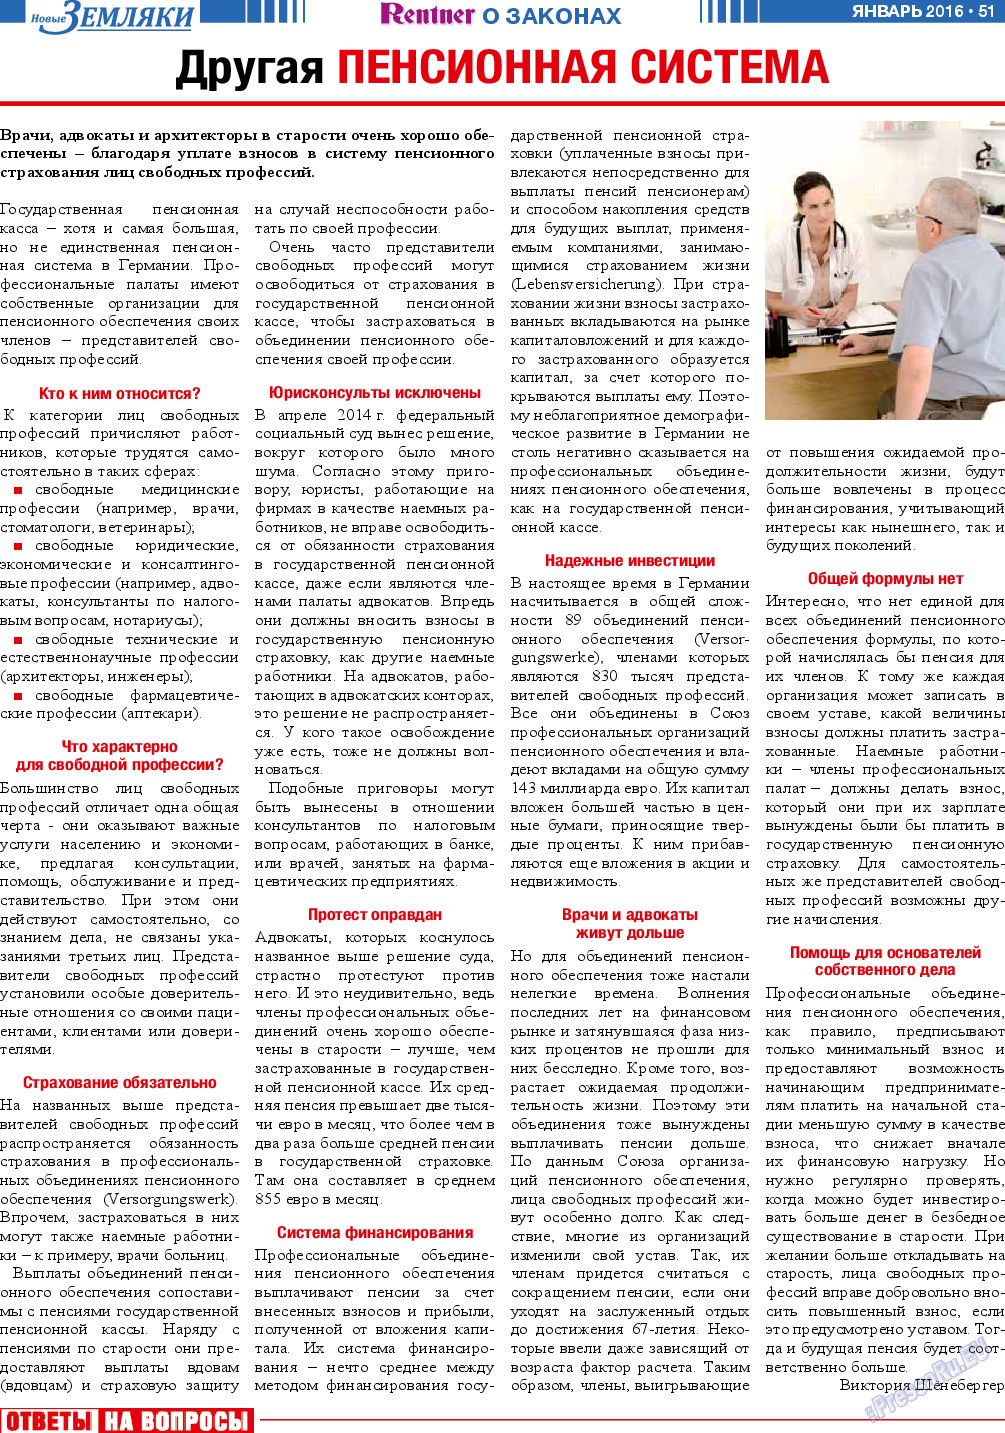 Новые Земляки, газета. 2016 №1 стр.51